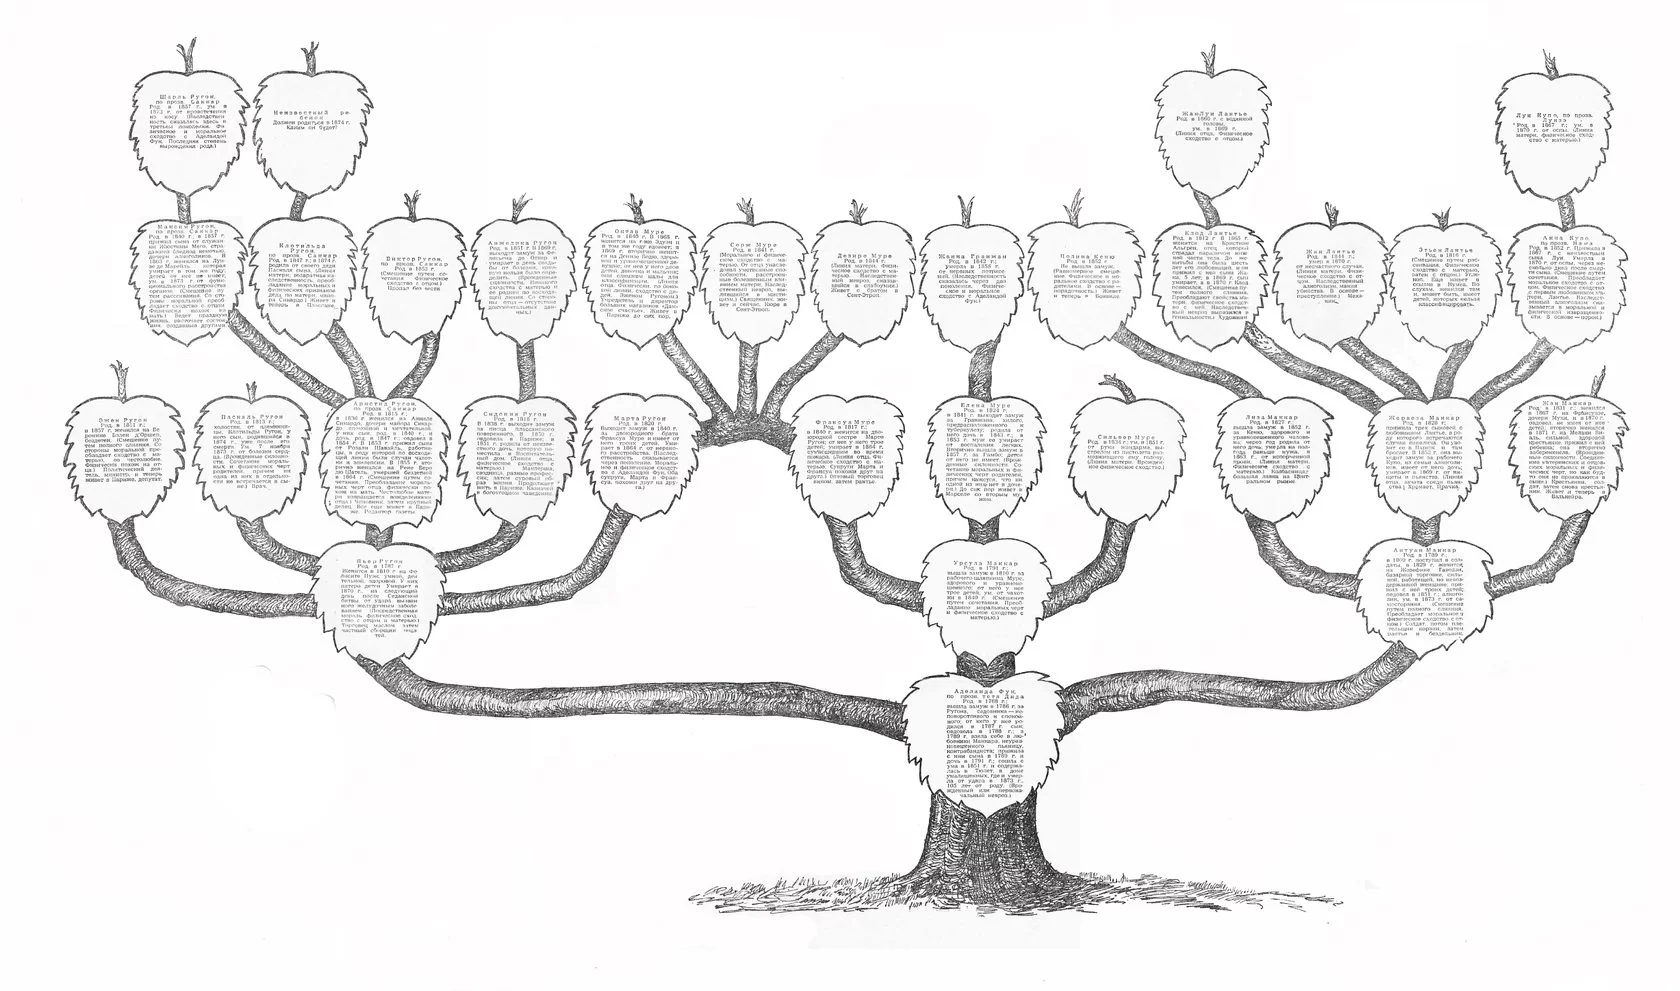 Делаем генеалогическое дерево своей семьи своими руками. Готовые шаблоны.